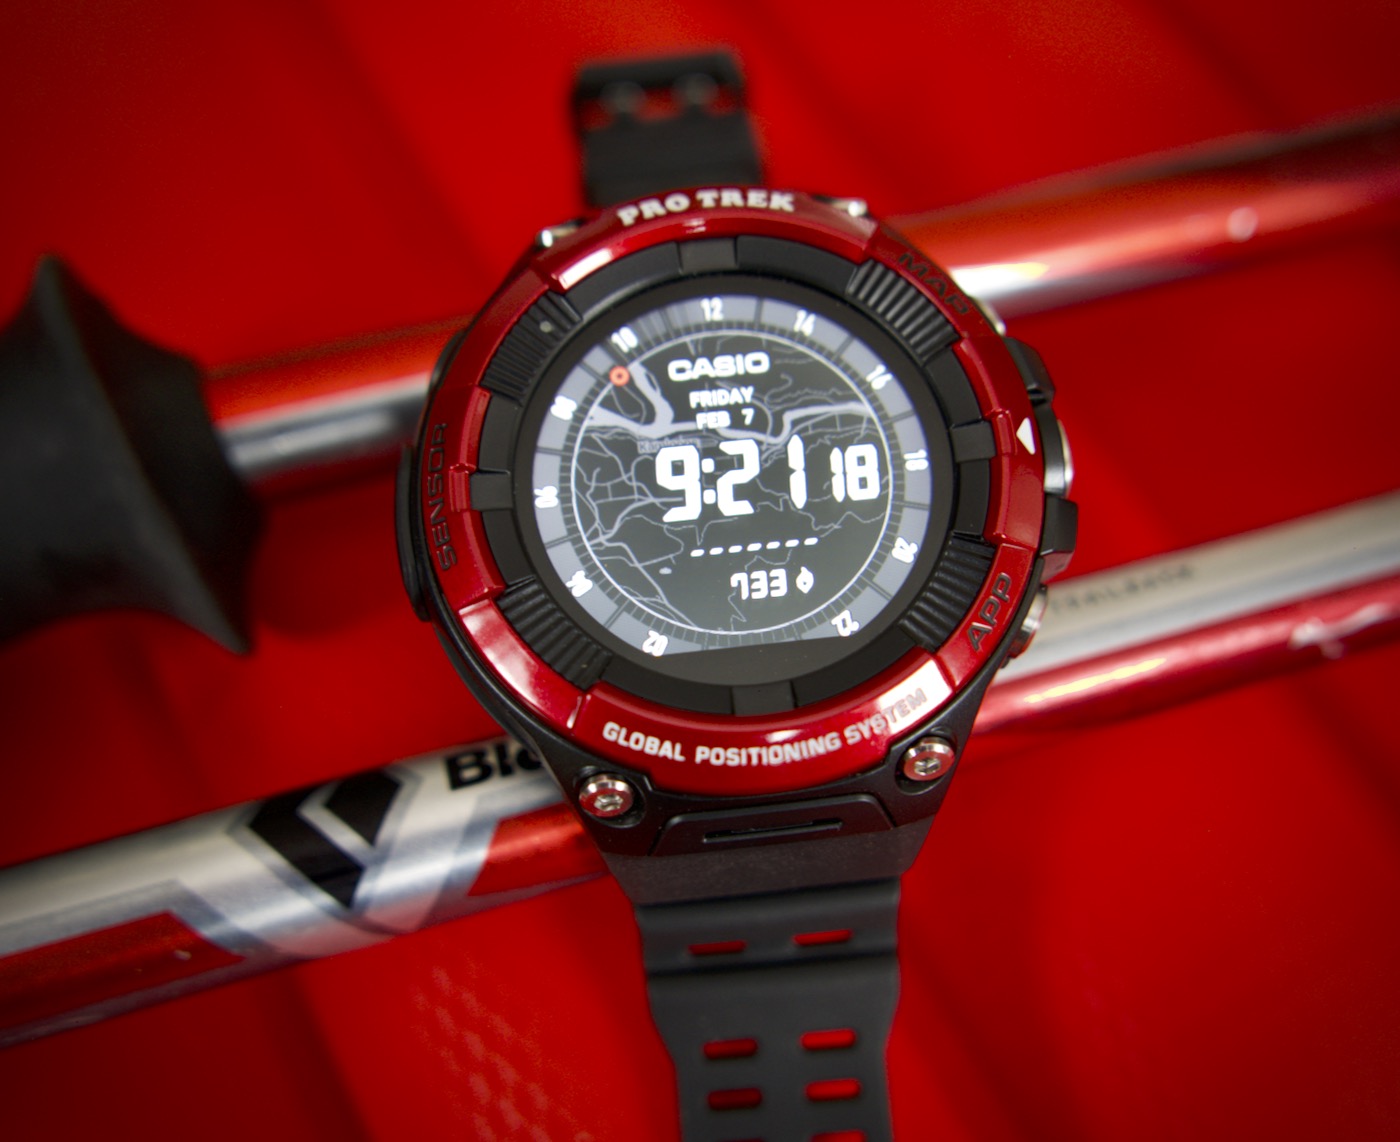 Casio también hace smartwatch, nuevo PRO TREK WSD-F21HR ideal para